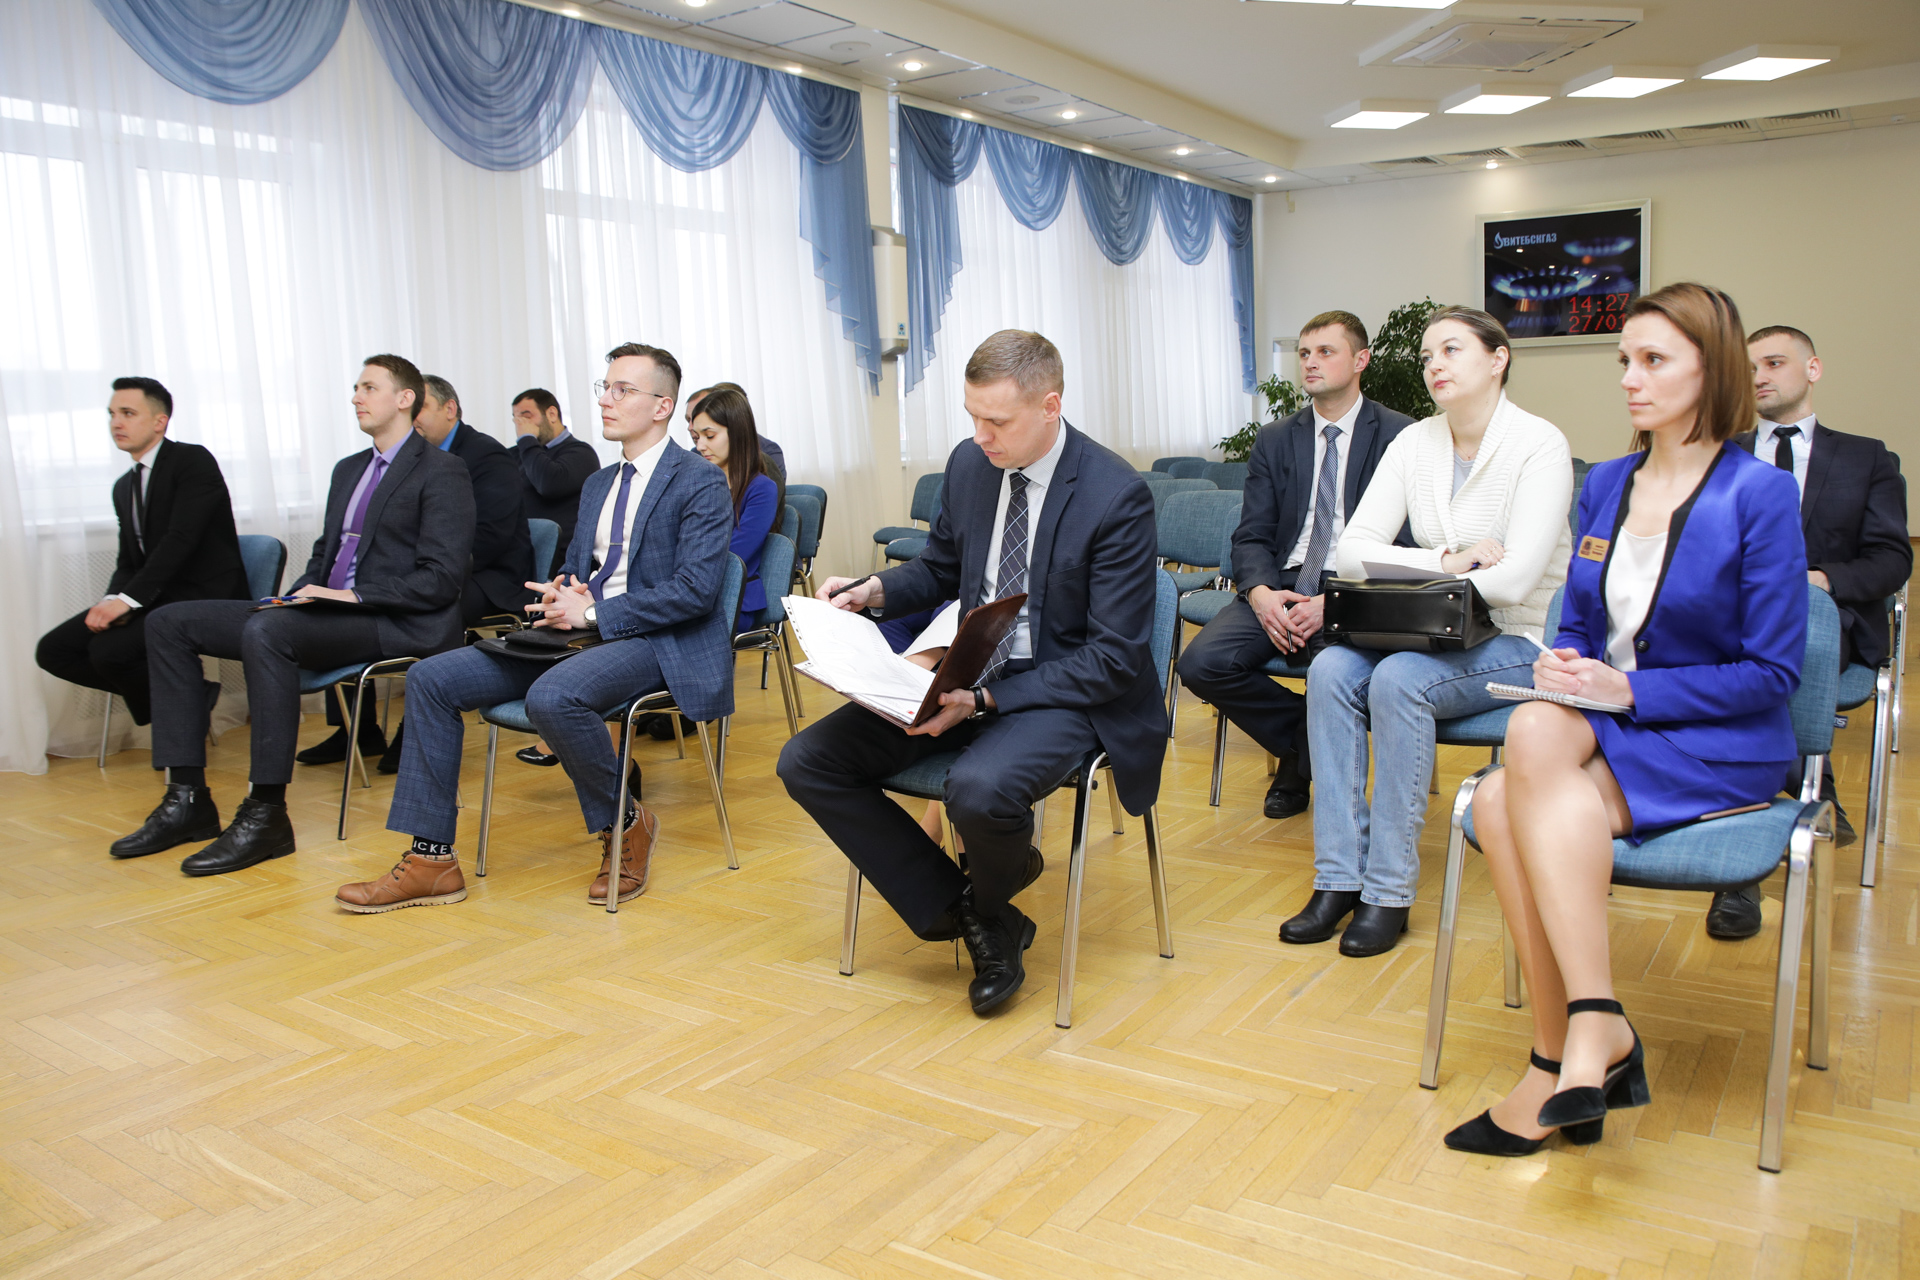 Встреча специалистов, занятых в сфере обслуживания населения в ПУ "Витебскгаз"